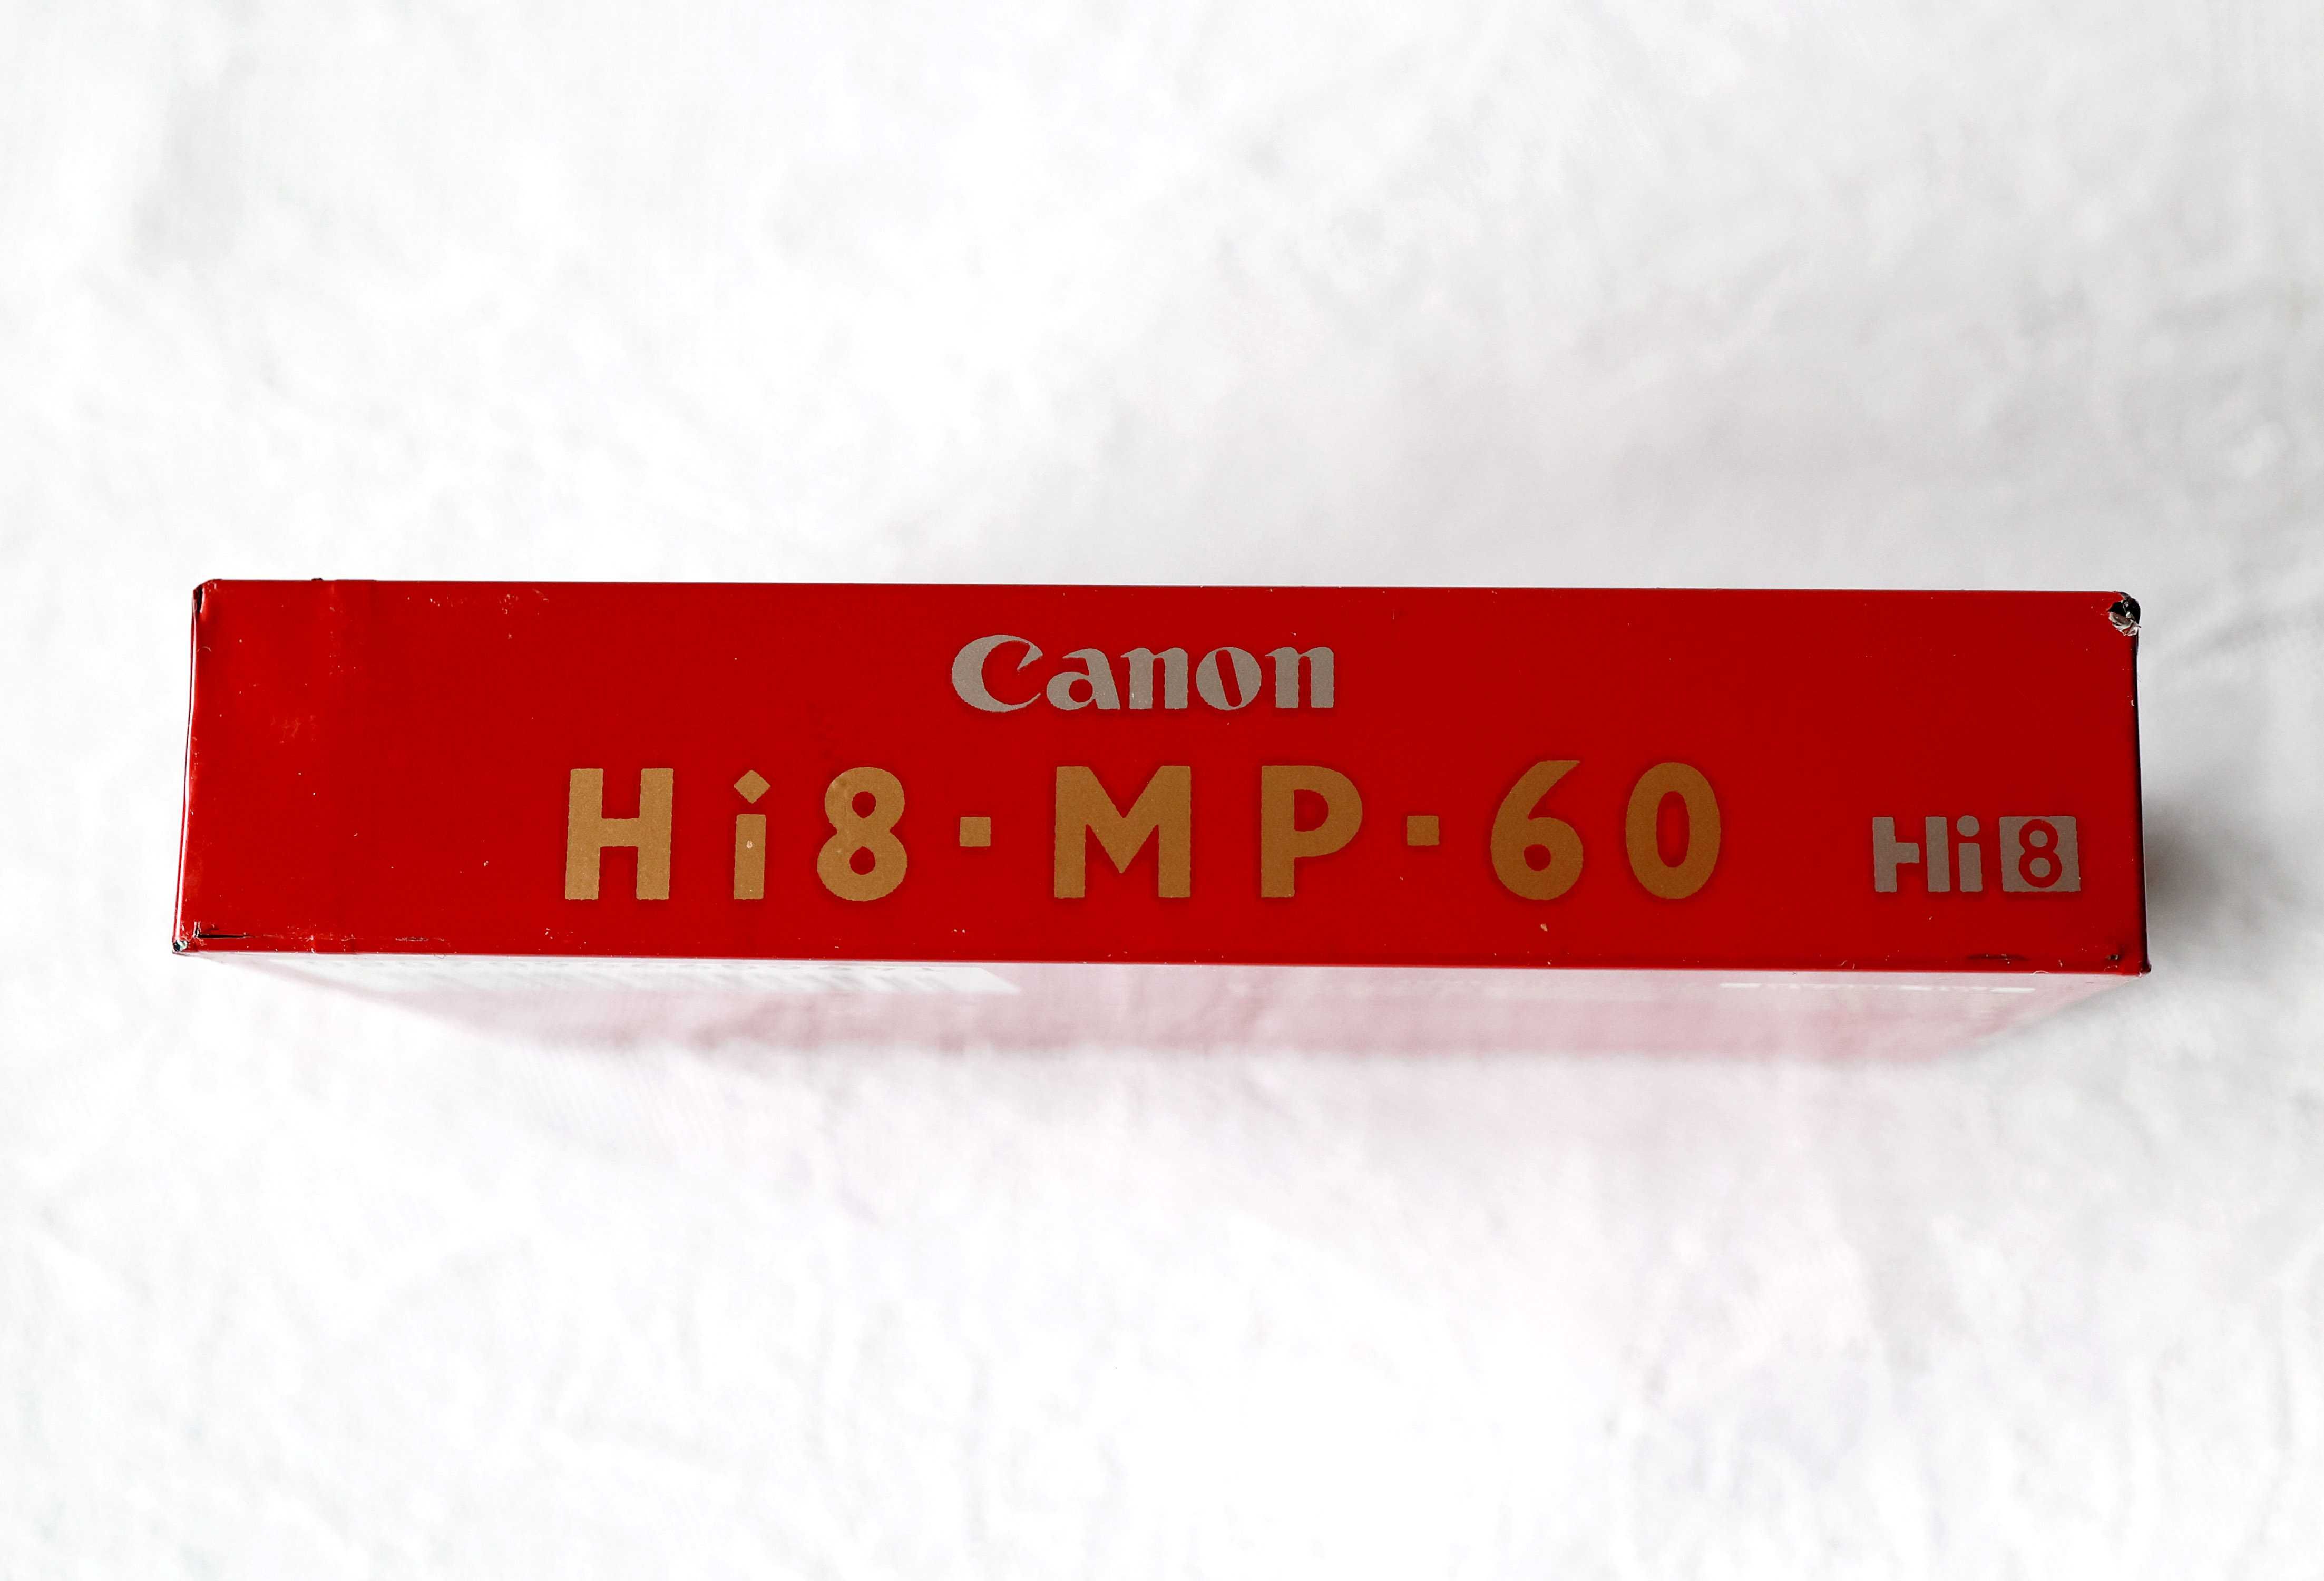 Canon MP 60 * Hi 8 * NOWA kaseta 8 mm do kamer Hi8 * Jedyna w sieci !!